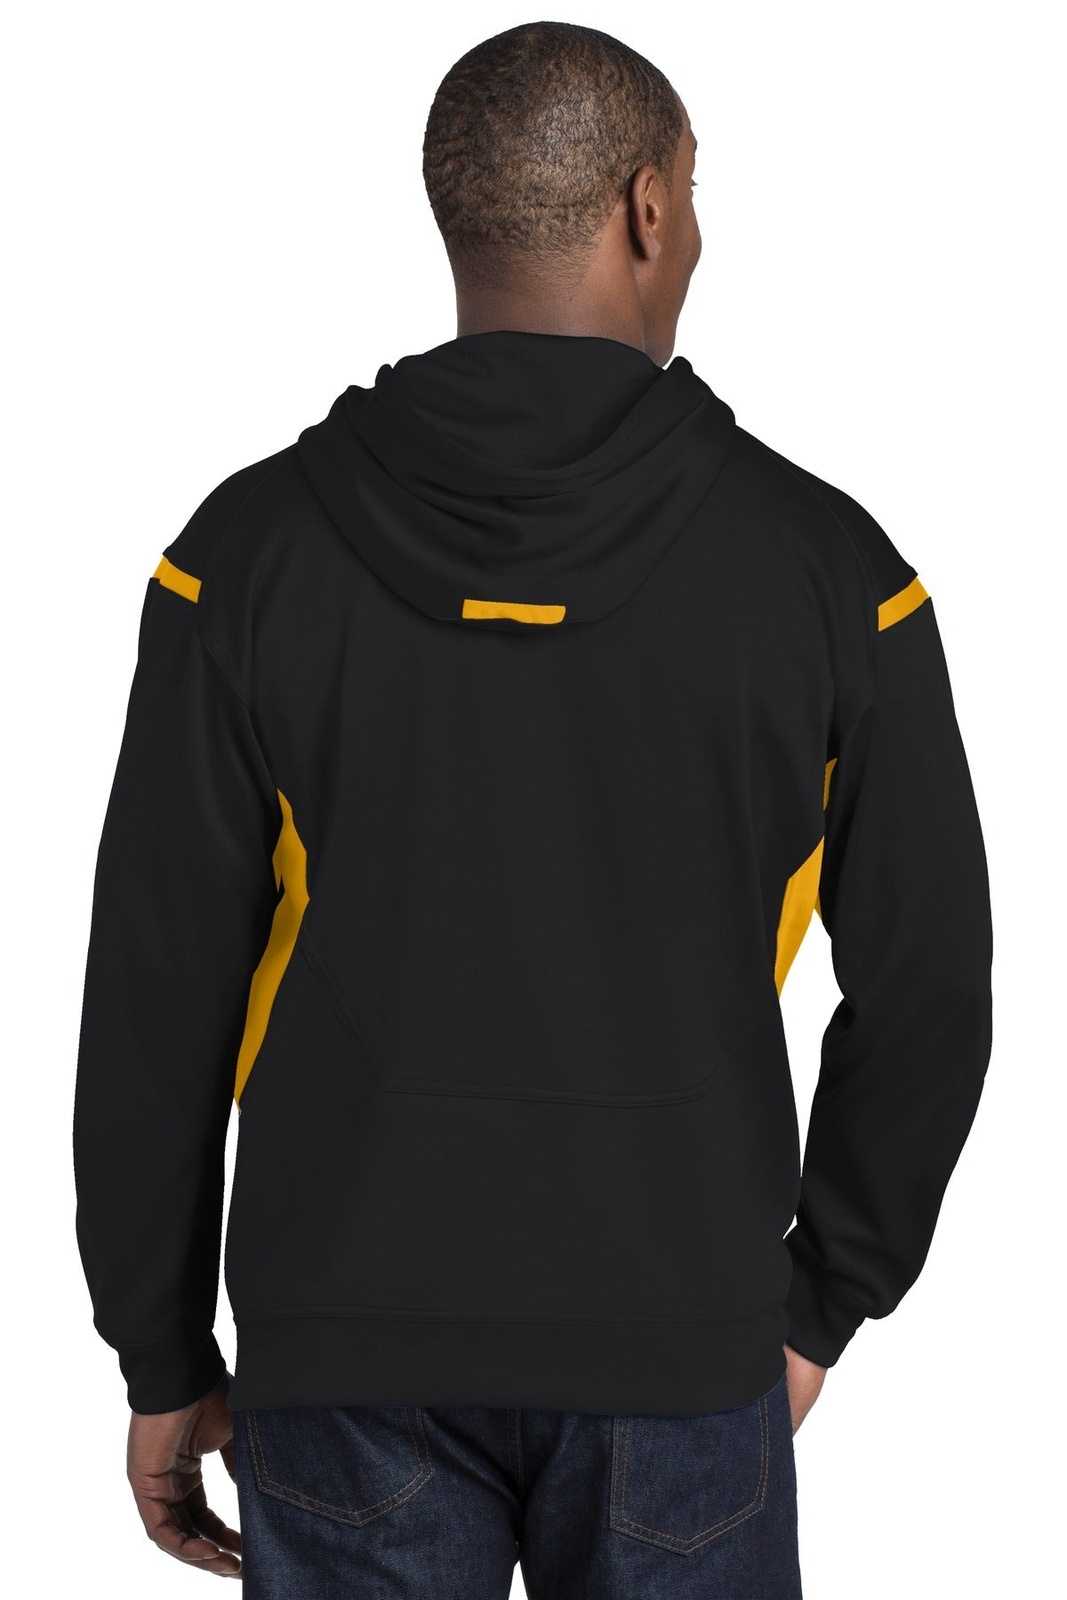 Sport-Tek F246 Tech Fleece Colorblock Hooded Sweatshirt - Black Gold - HIT a Double - 1